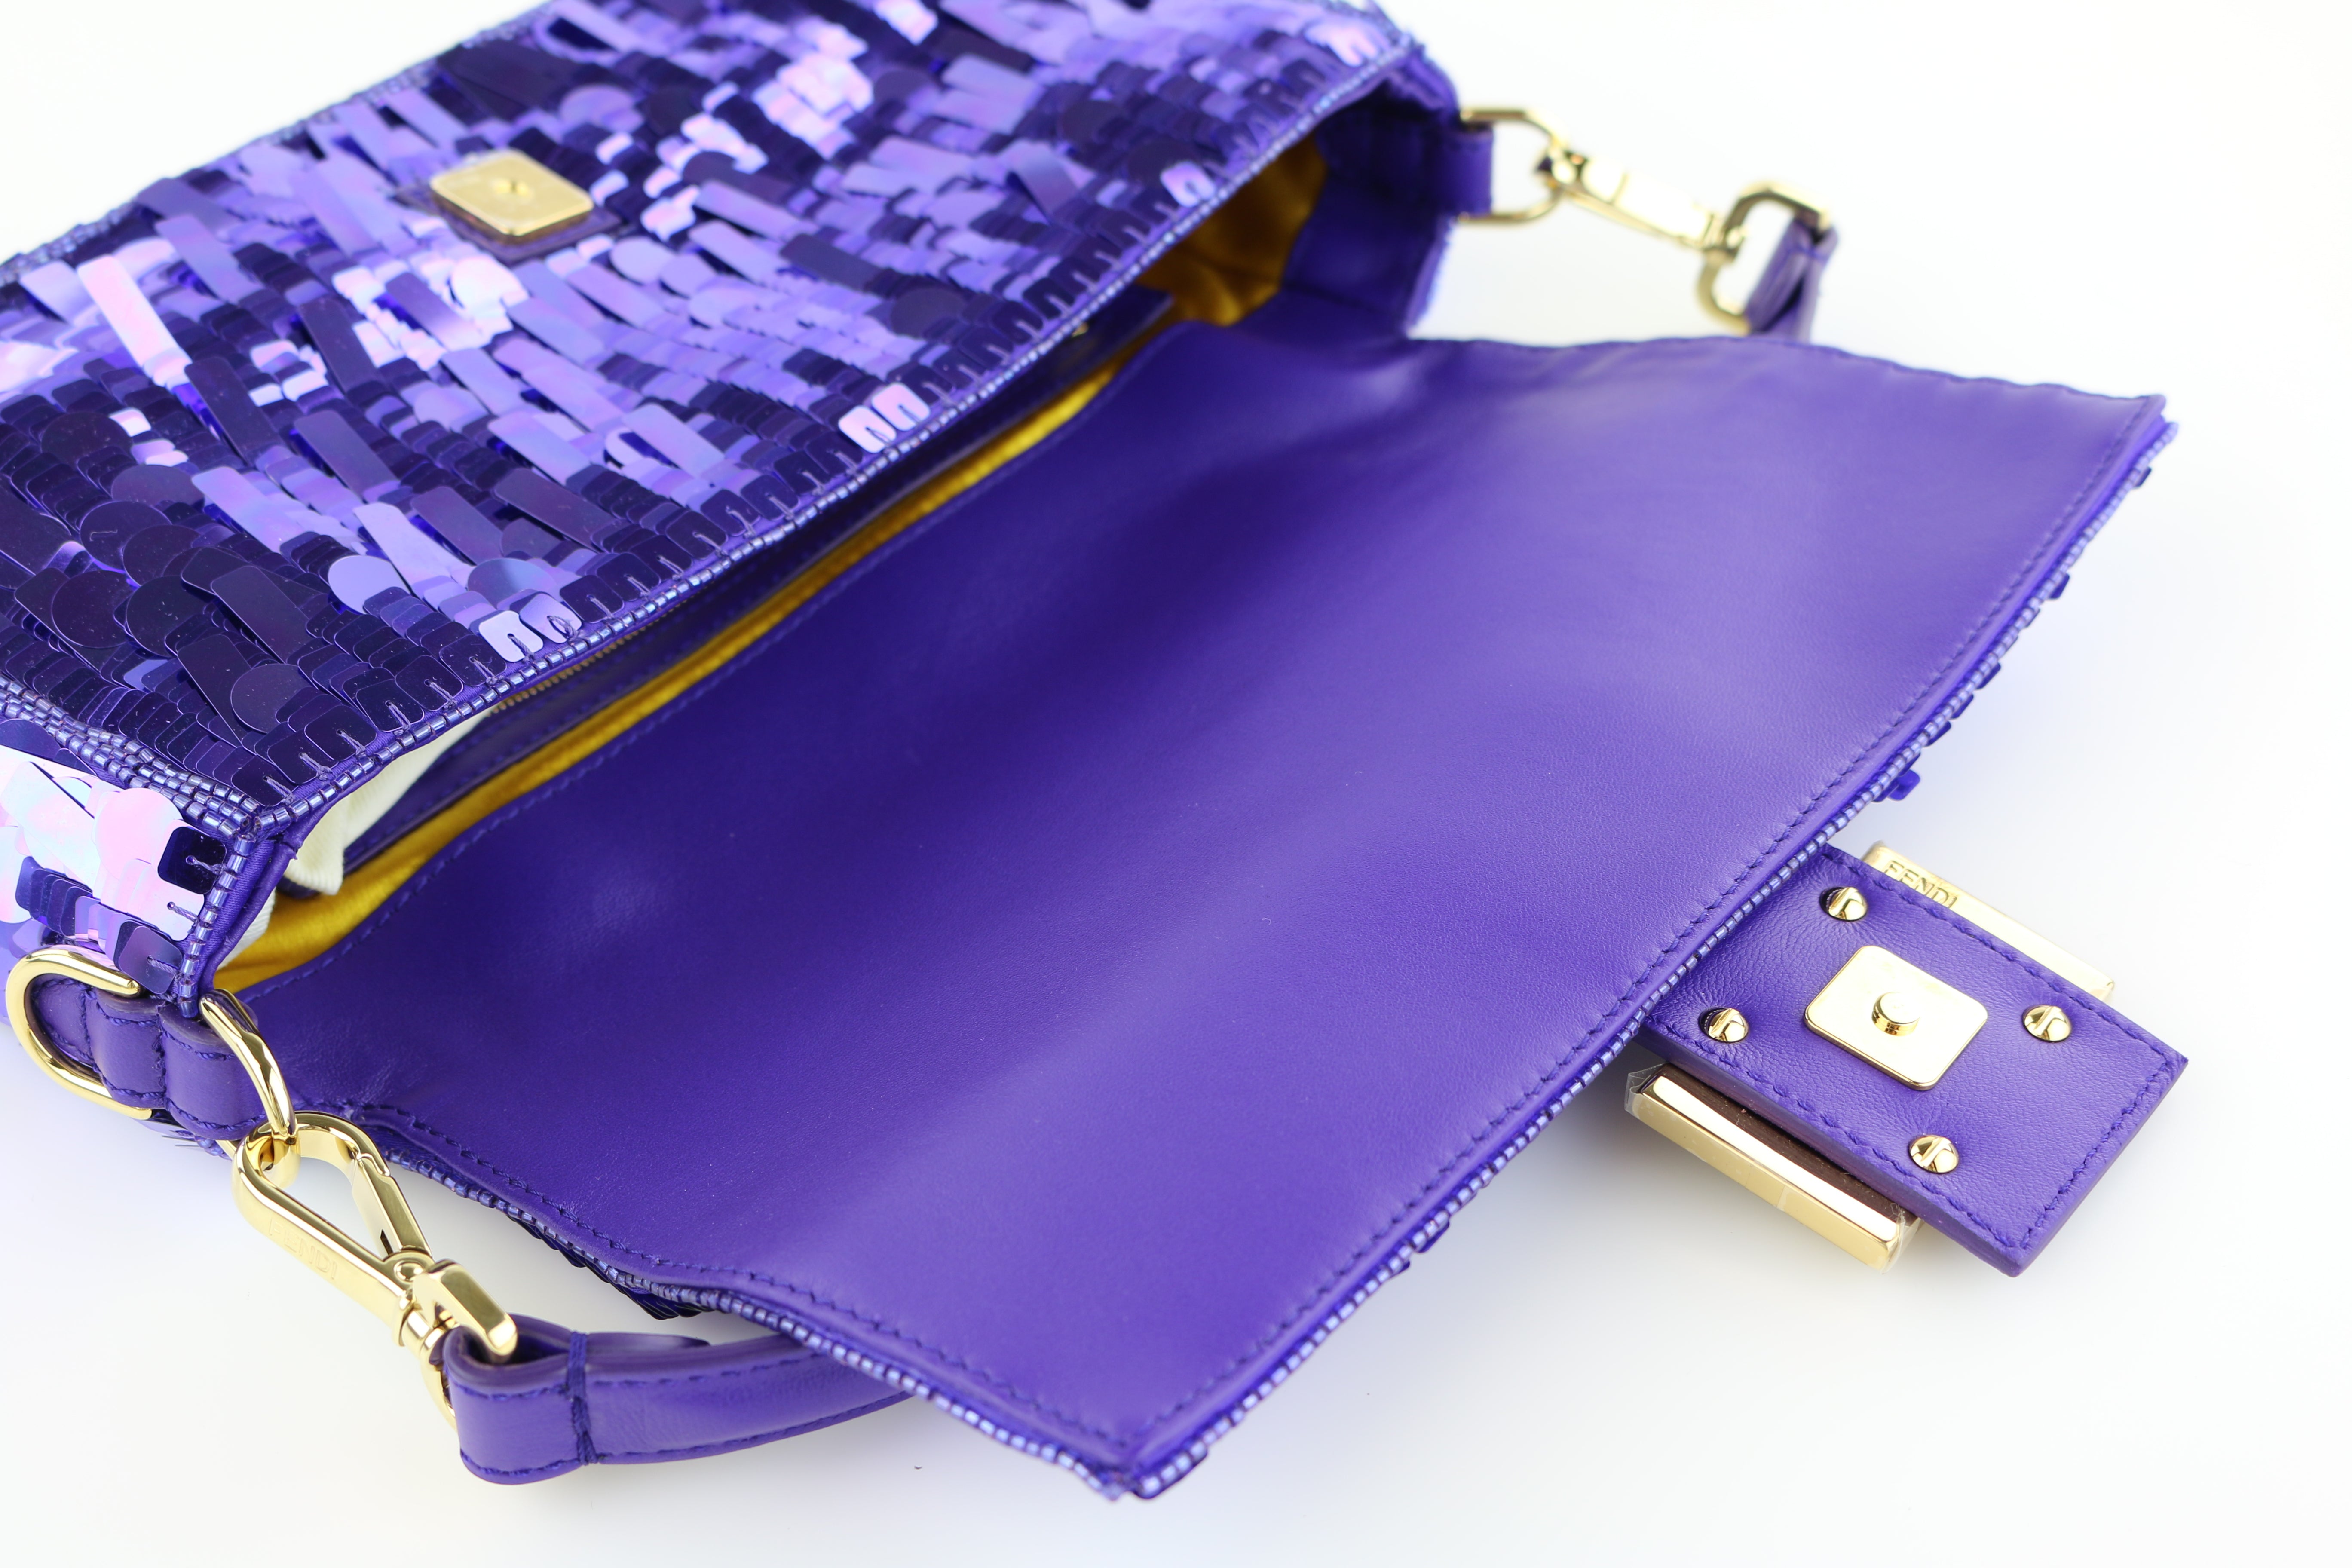 Nano Baguette Charm - Purple sequin charm